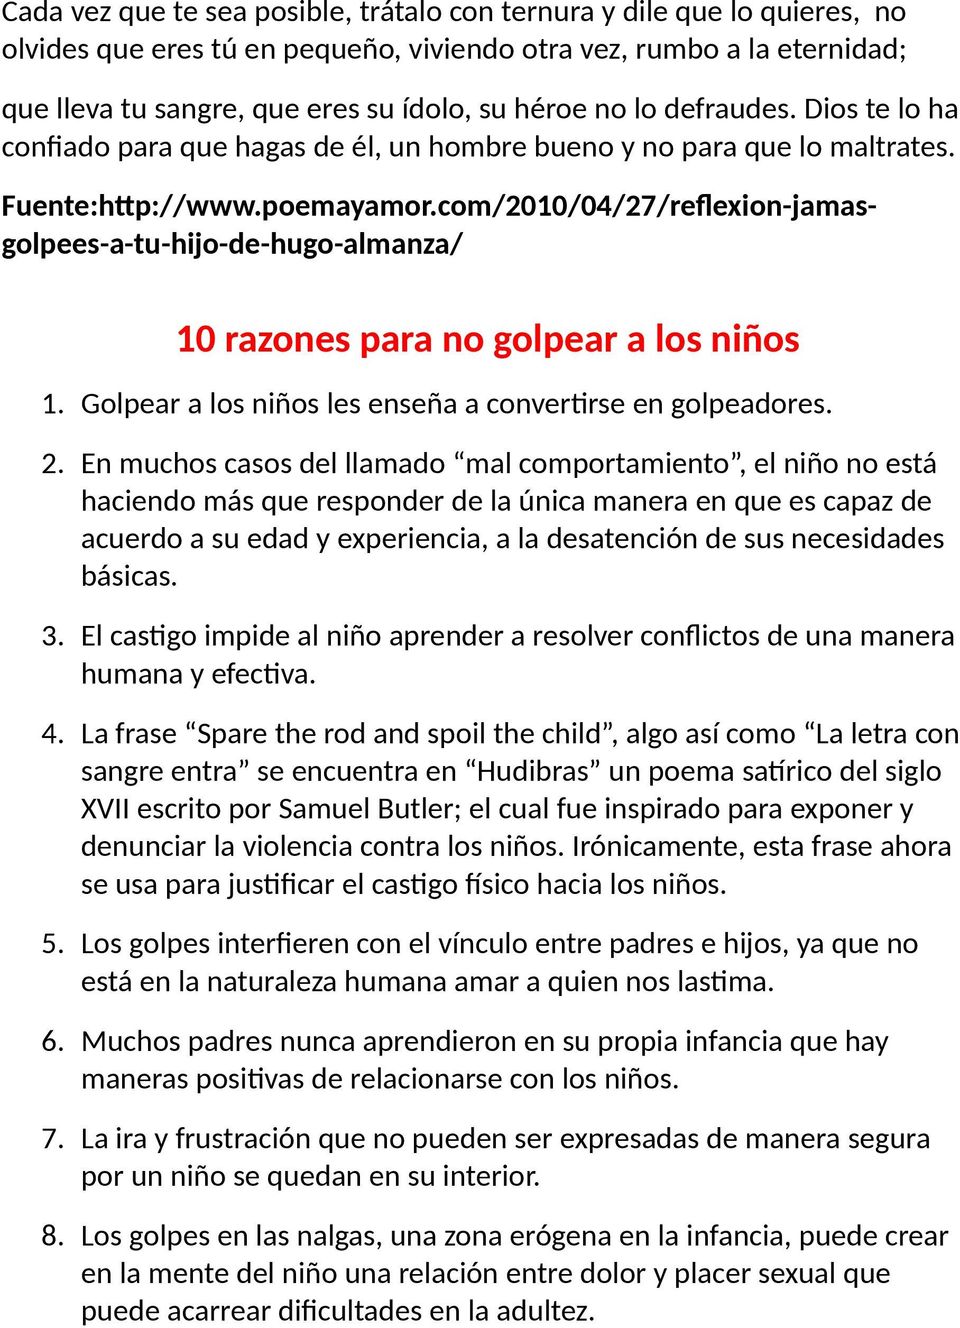 Circular No. 14. Reflexión: Jamás Golpees a Tu Hijo de Hugo Almanza.  Información especial para los próximos días. Bogotá . - PDF Free Download